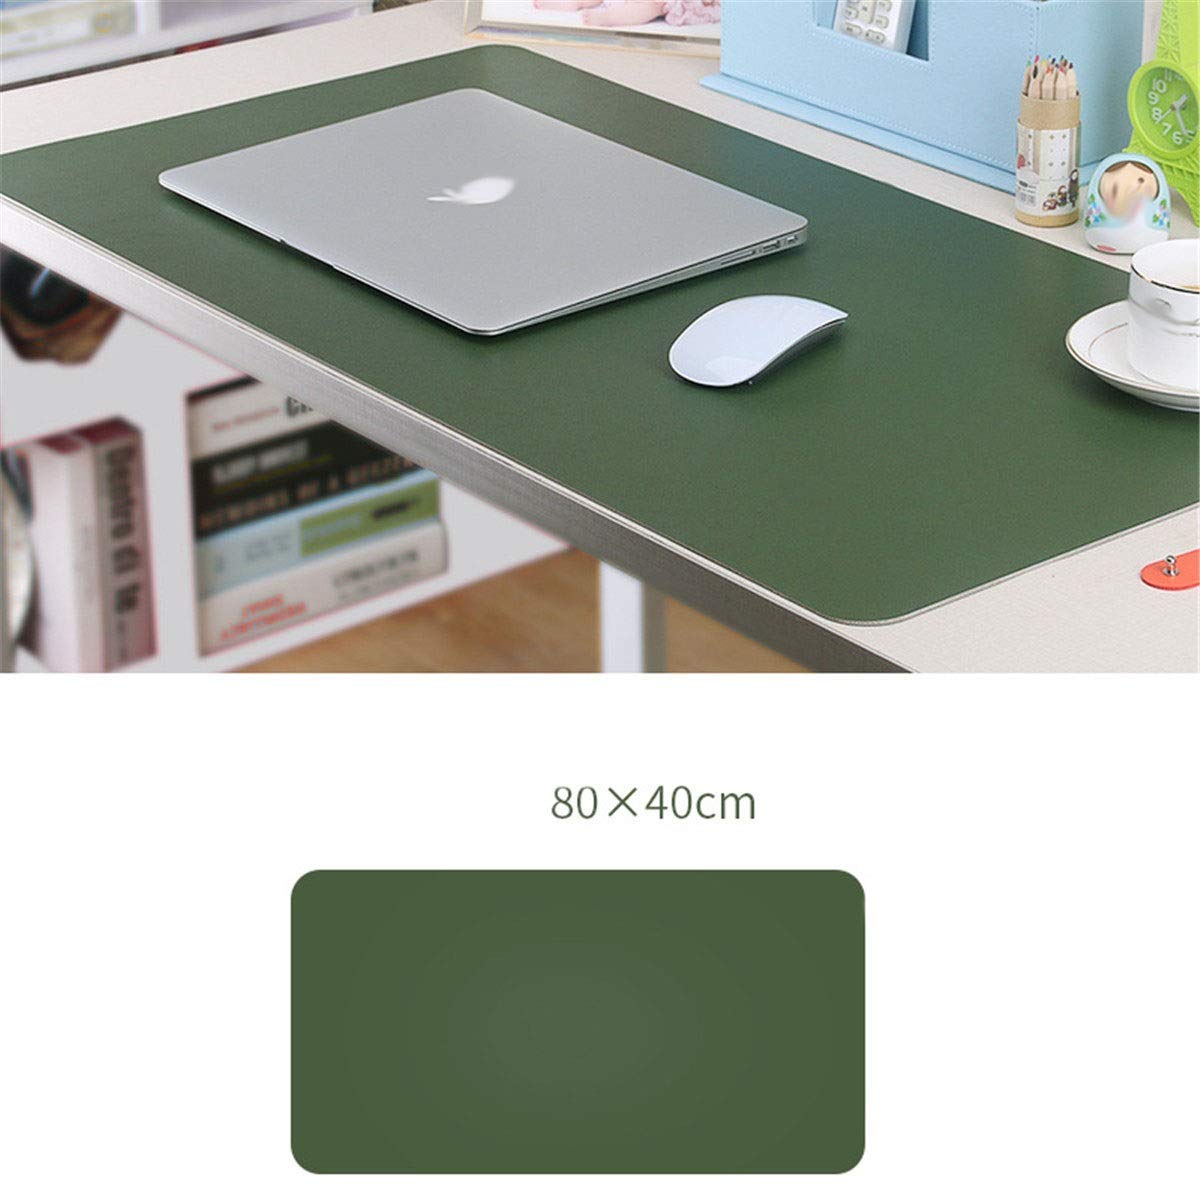 CHEXIAOcx Rollbare Tischunterlage aus Leder, zweifarbig, für Tablet, Notebook, Büro, Mousepad, erweiterte Version 80 * 40cm F